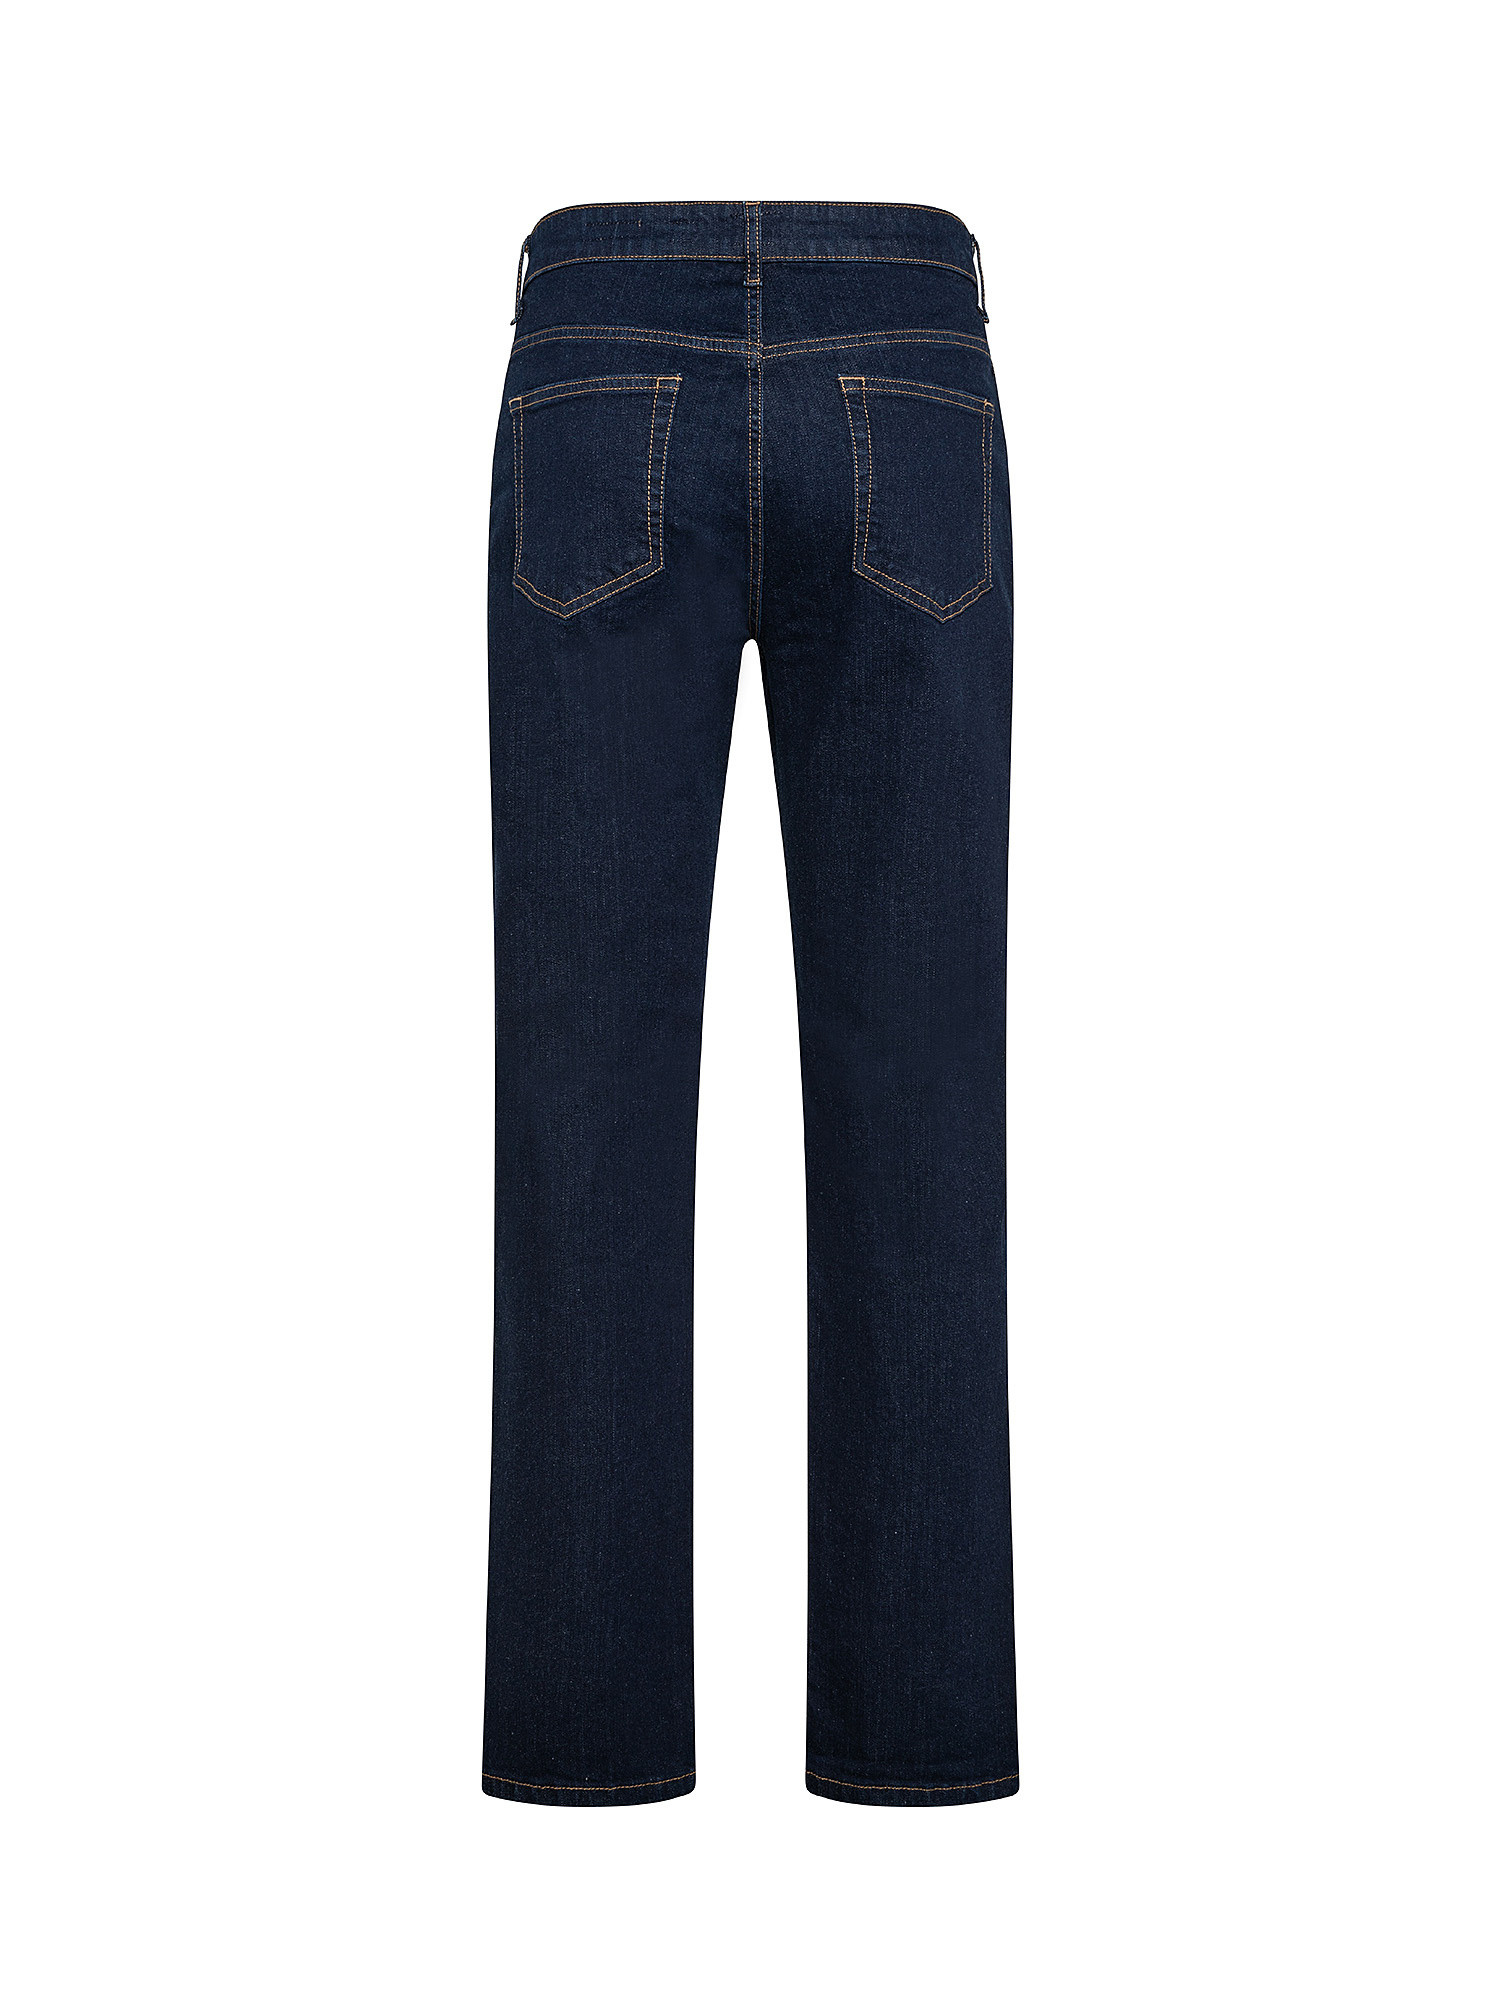 Five pocket jeans, Dark Blue, large image number 1